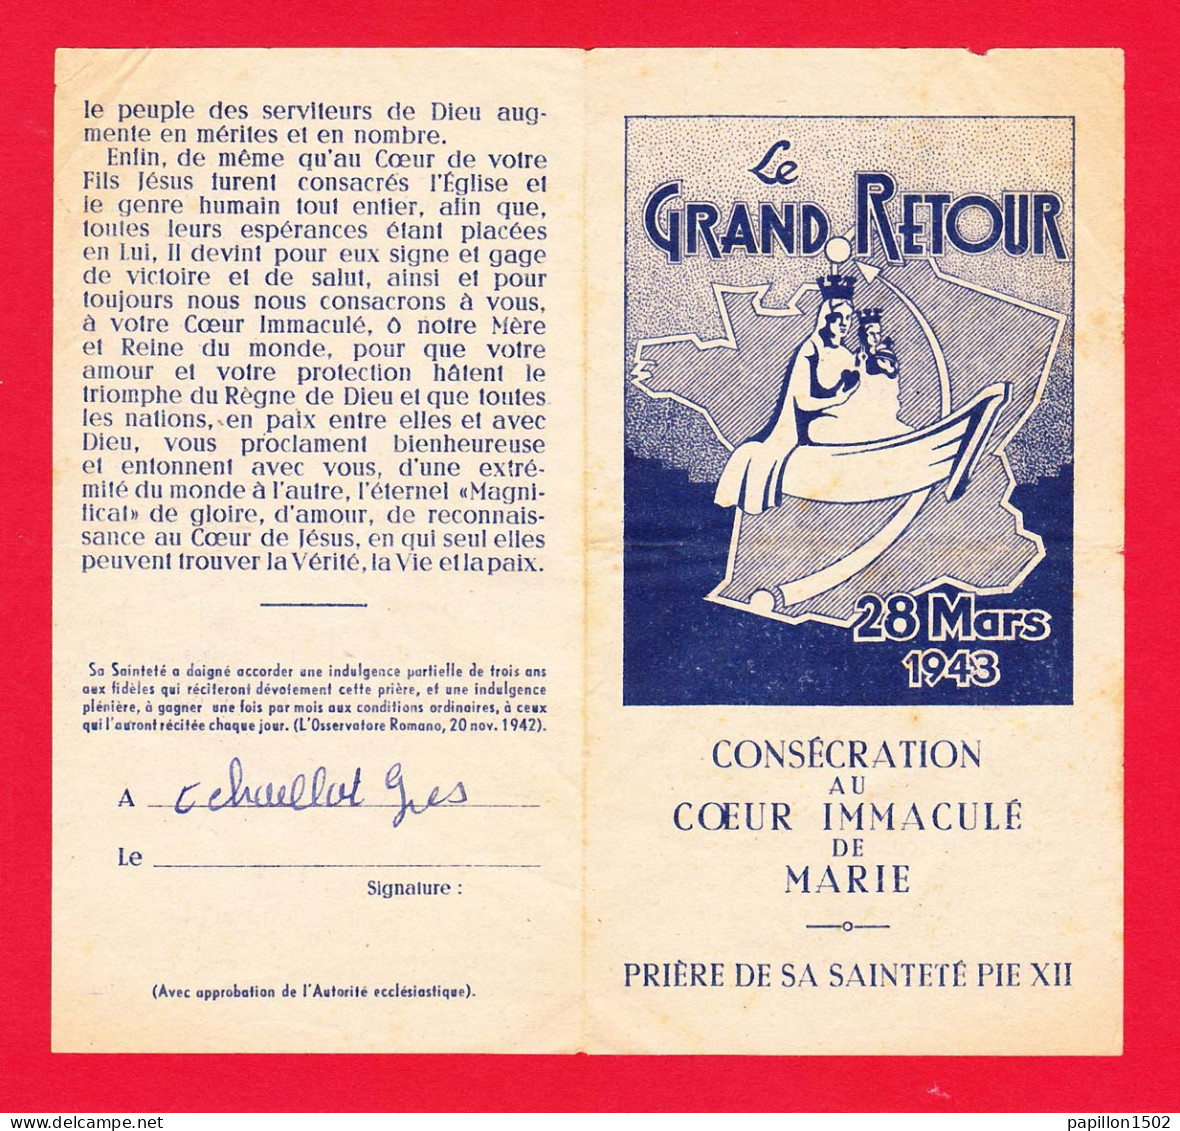 Religion-34P6 Le Grand Retour, 28 Mars 1943, Prière De Sa Sainteté PIE XII - Papes